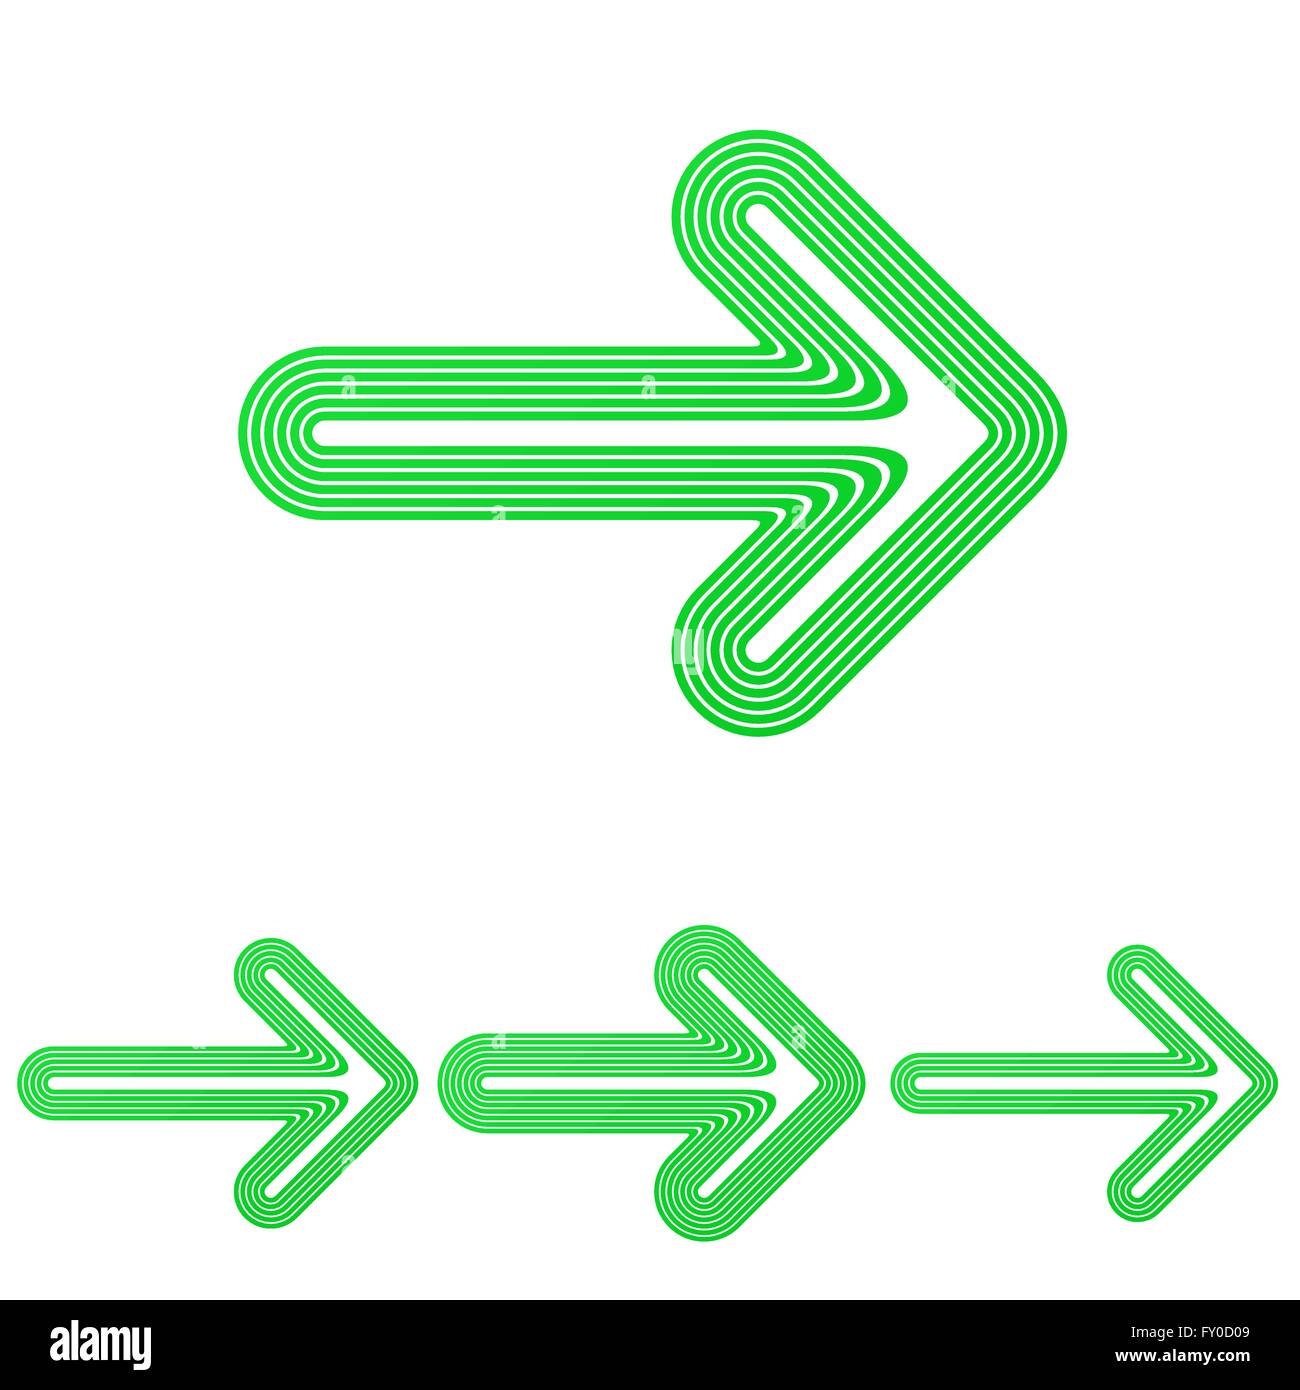 Green line arrow logo design set Stock Vector